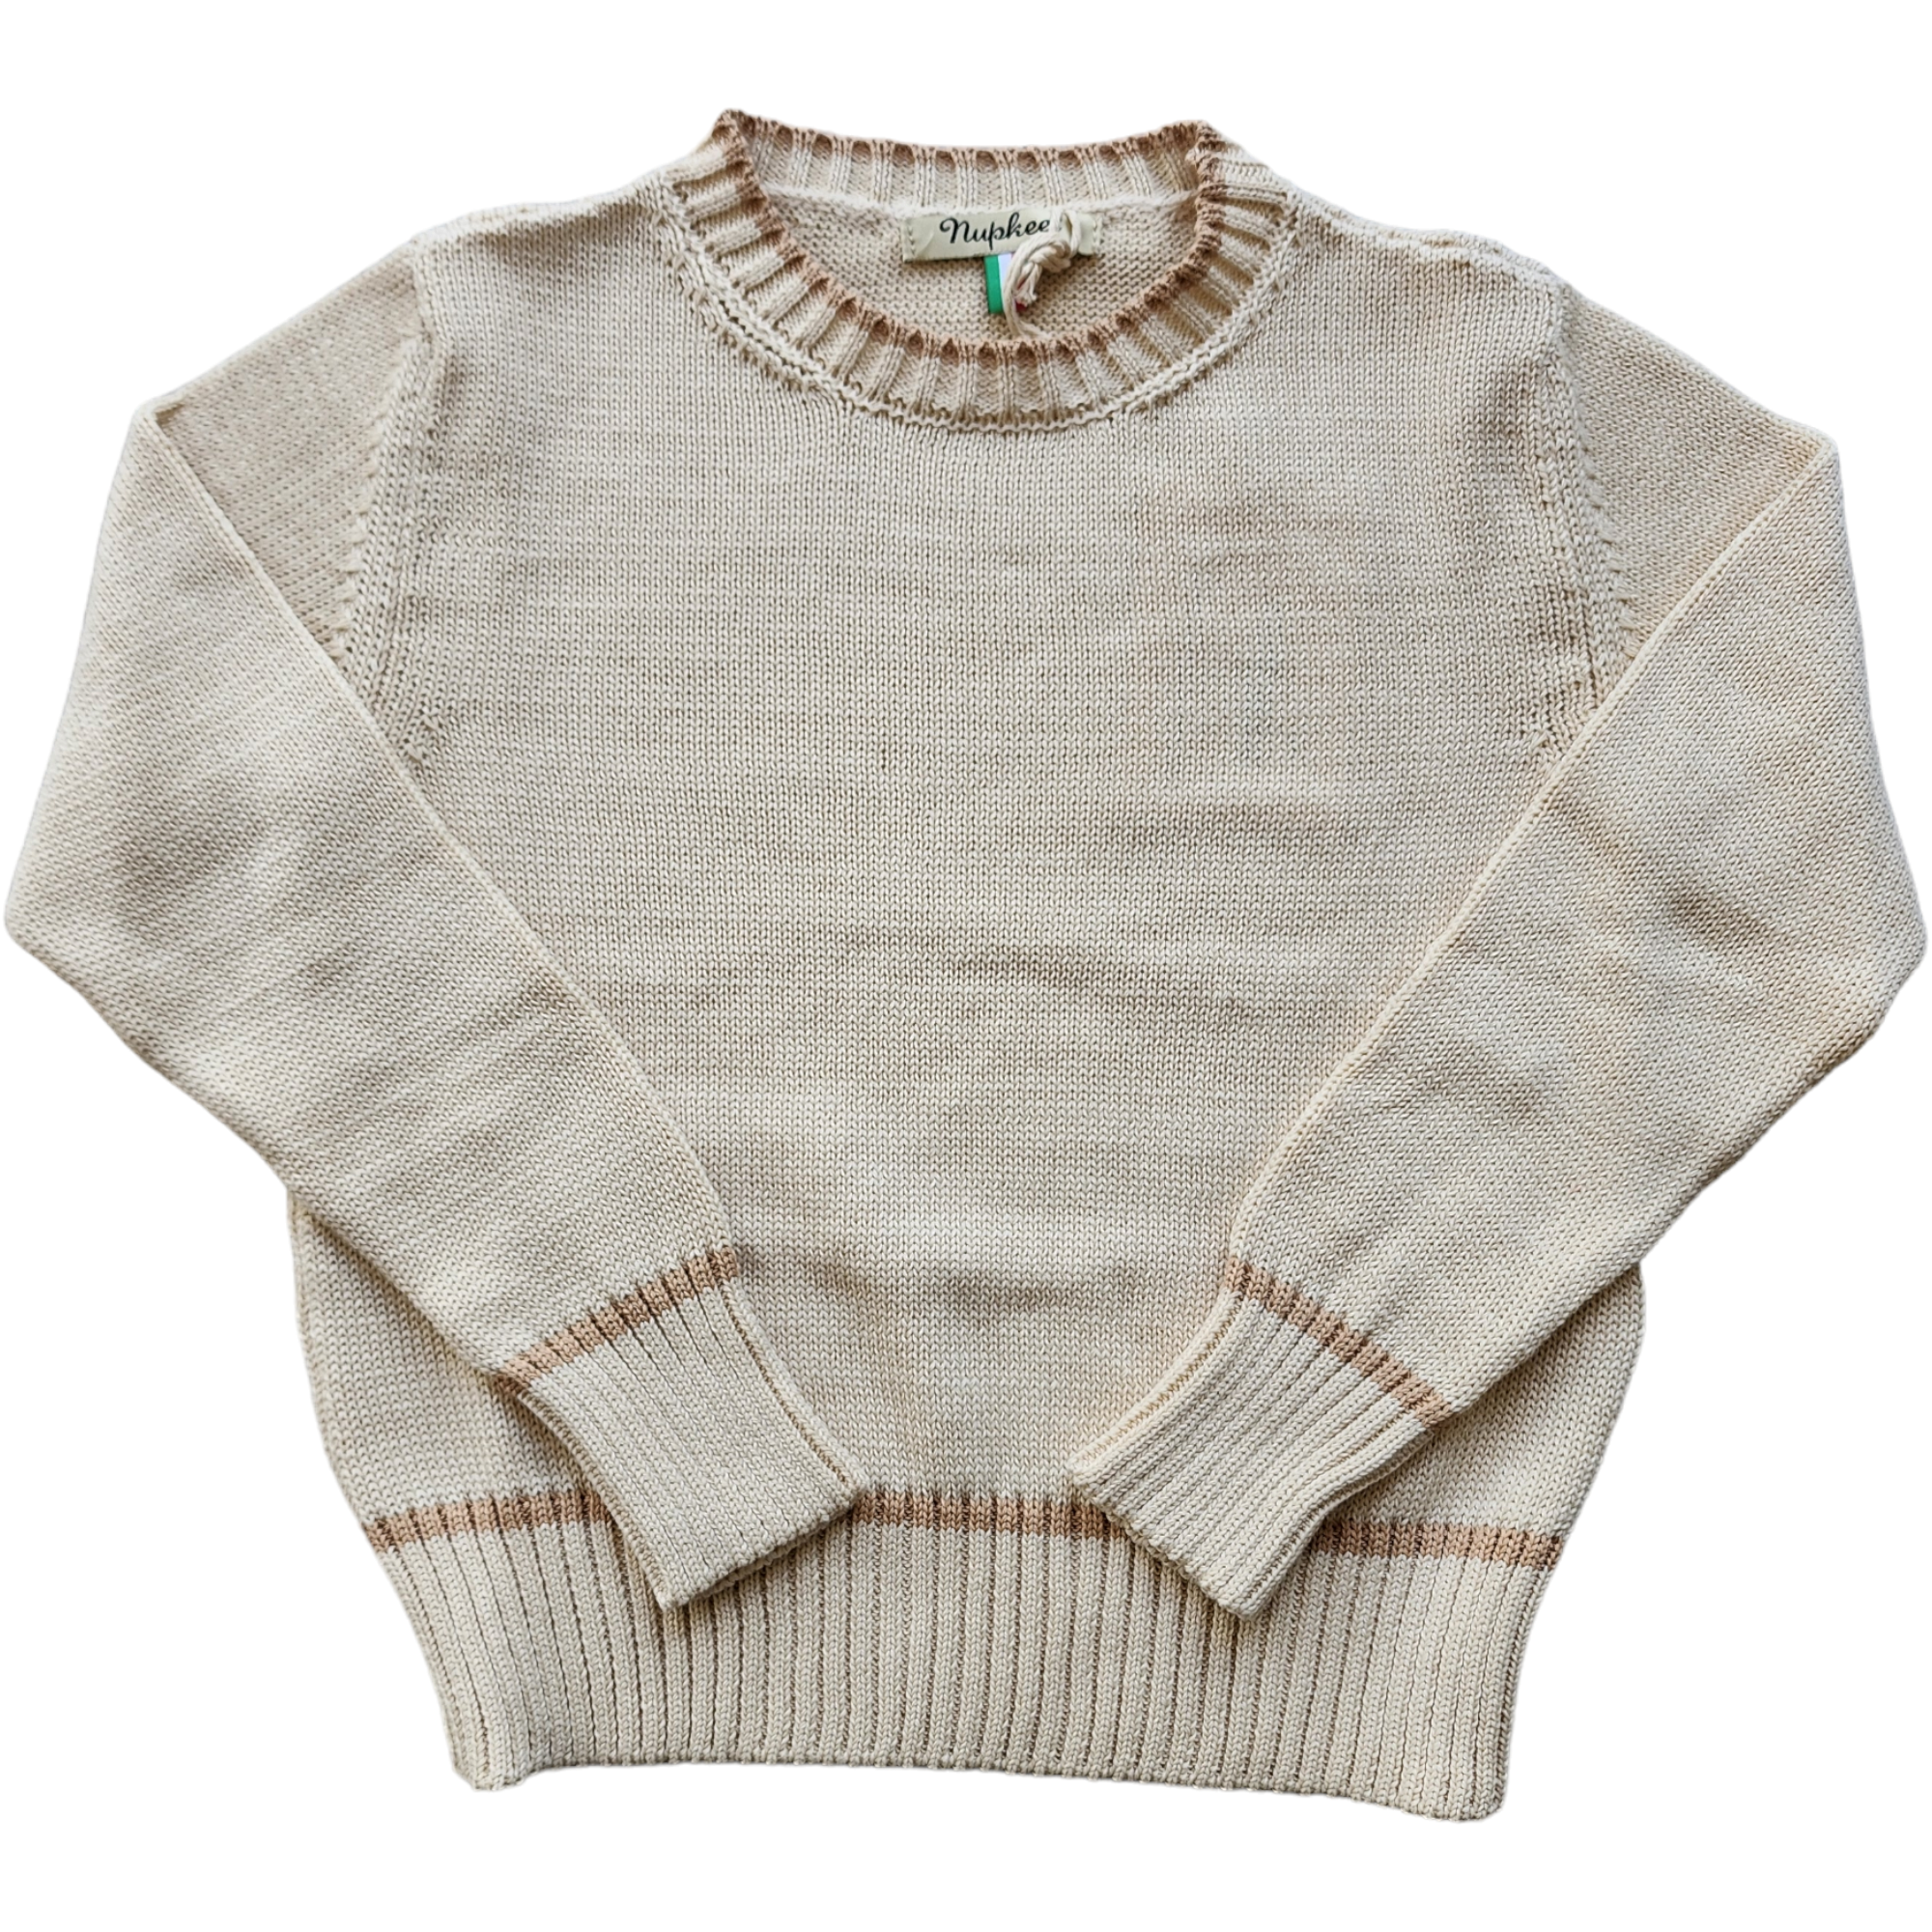 Nupkeet Cepola Sweater